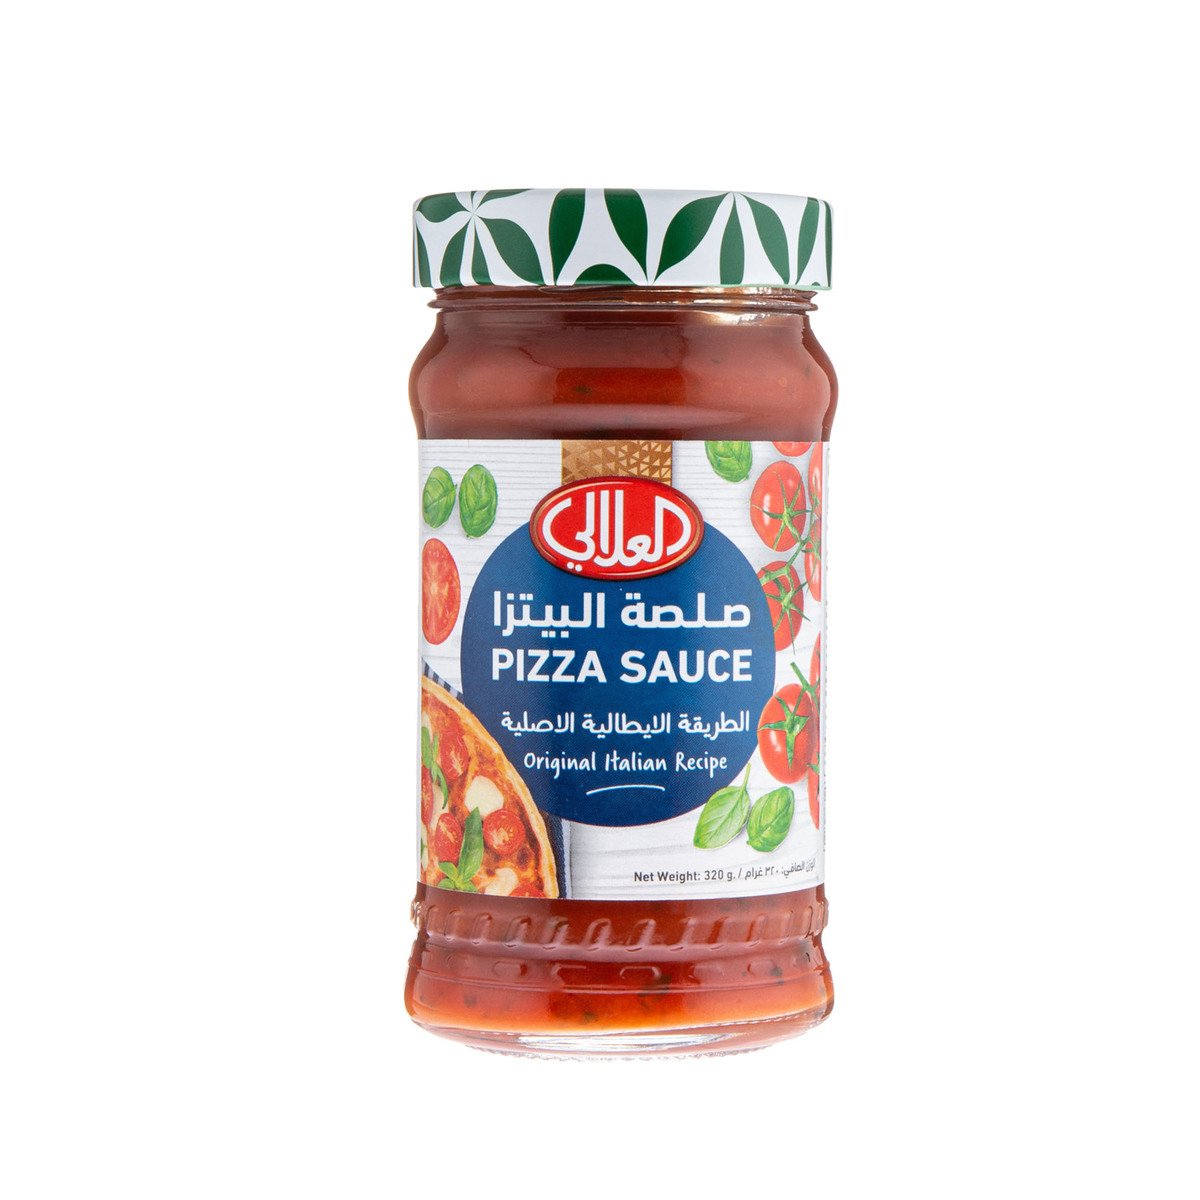 اشتري قم بشراء العلالي صلصة البيتزا ٣٢٠ جم Online at Best Price من الموقع - من لولو هايبر ماركت Cooking Sauce في الكويت